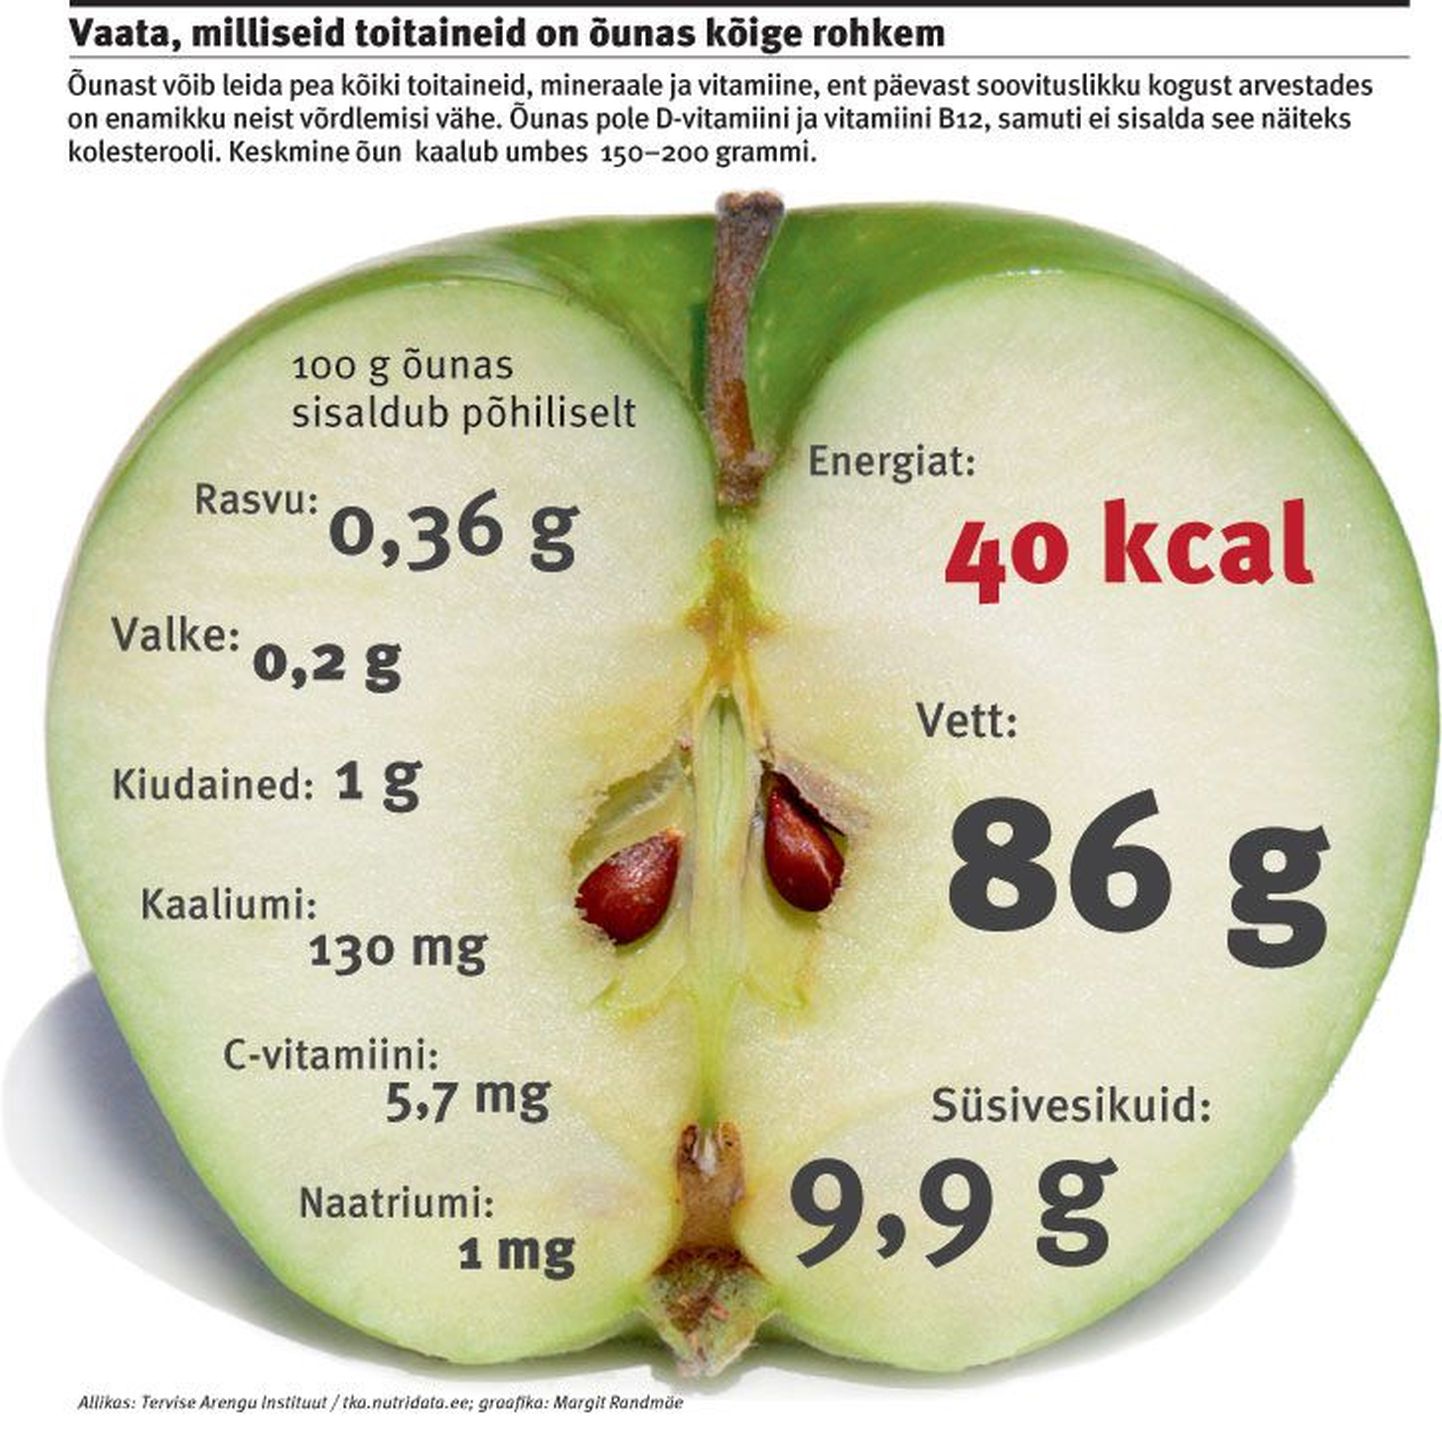 Vaata, milliseid toitaineid on õunas kõige rohkem.
Parandus: õun sisaldab 1,8 grammi kiudaineid.